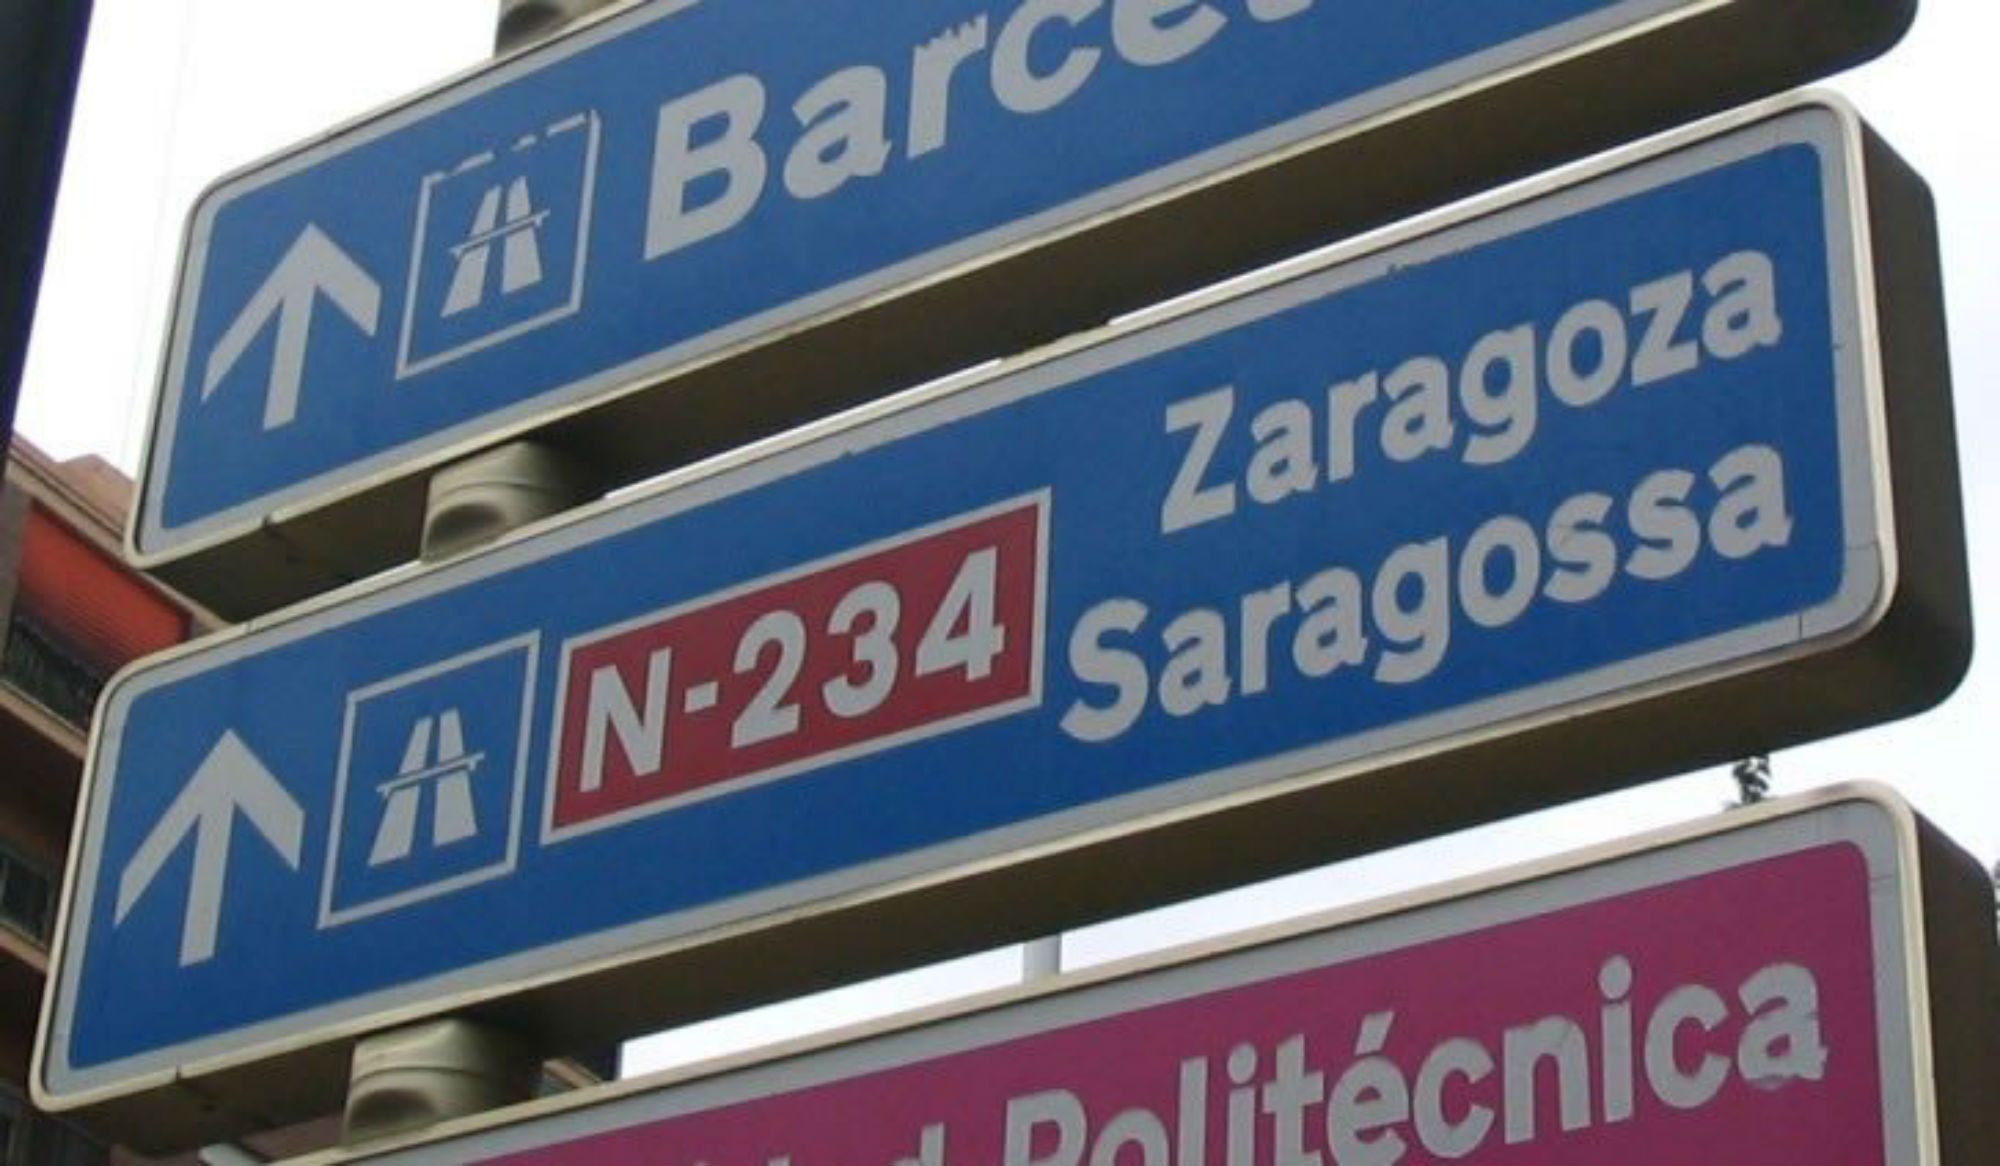 La oficialidad única del catalán no afectaría al bilingüismo, según un estudio